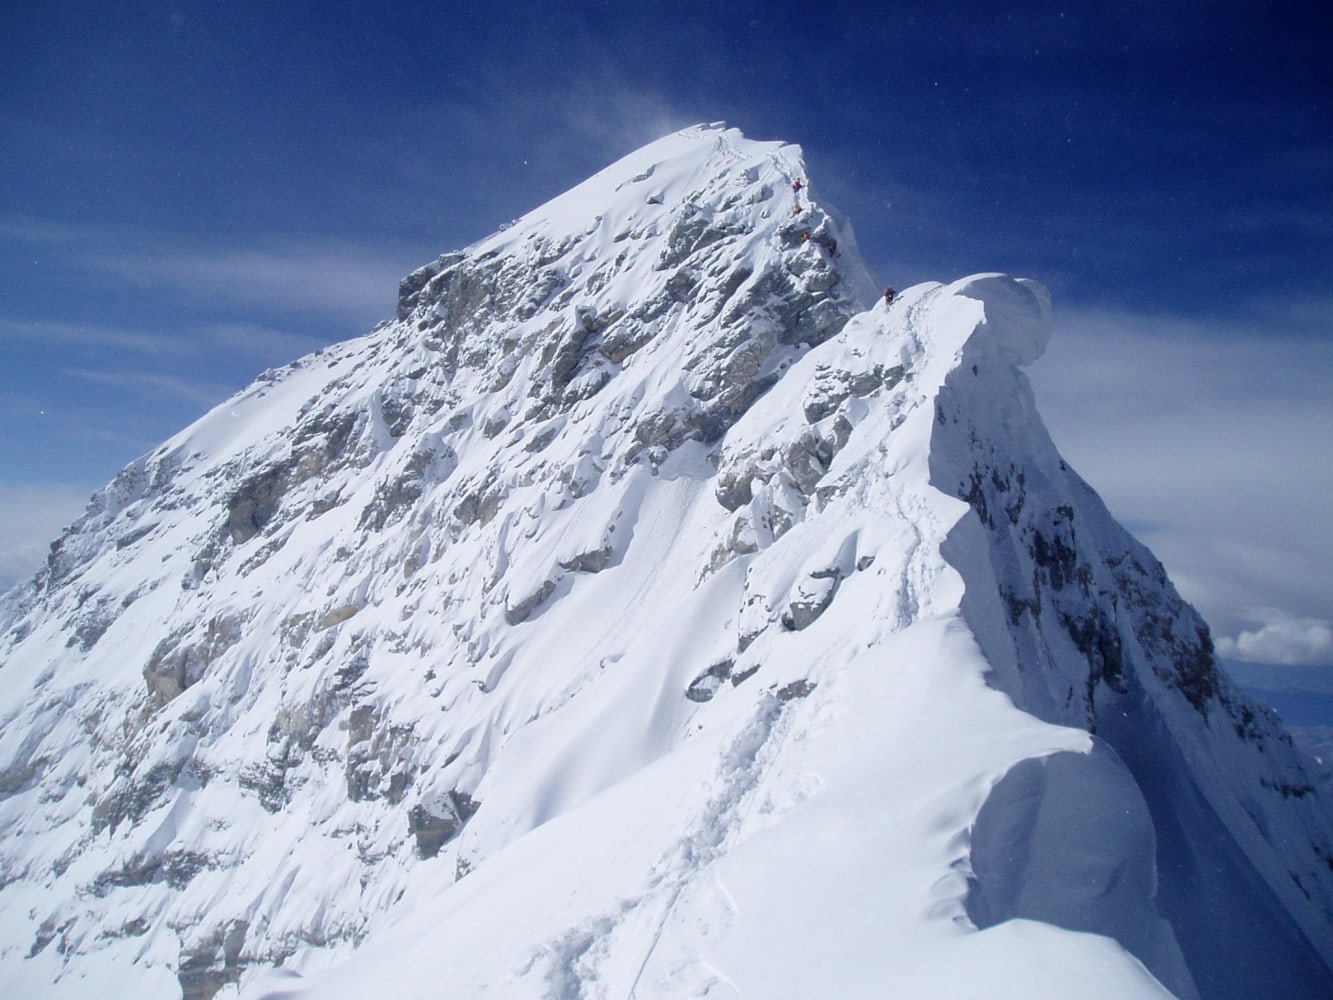 エベレストが 特別な山 である11の理由